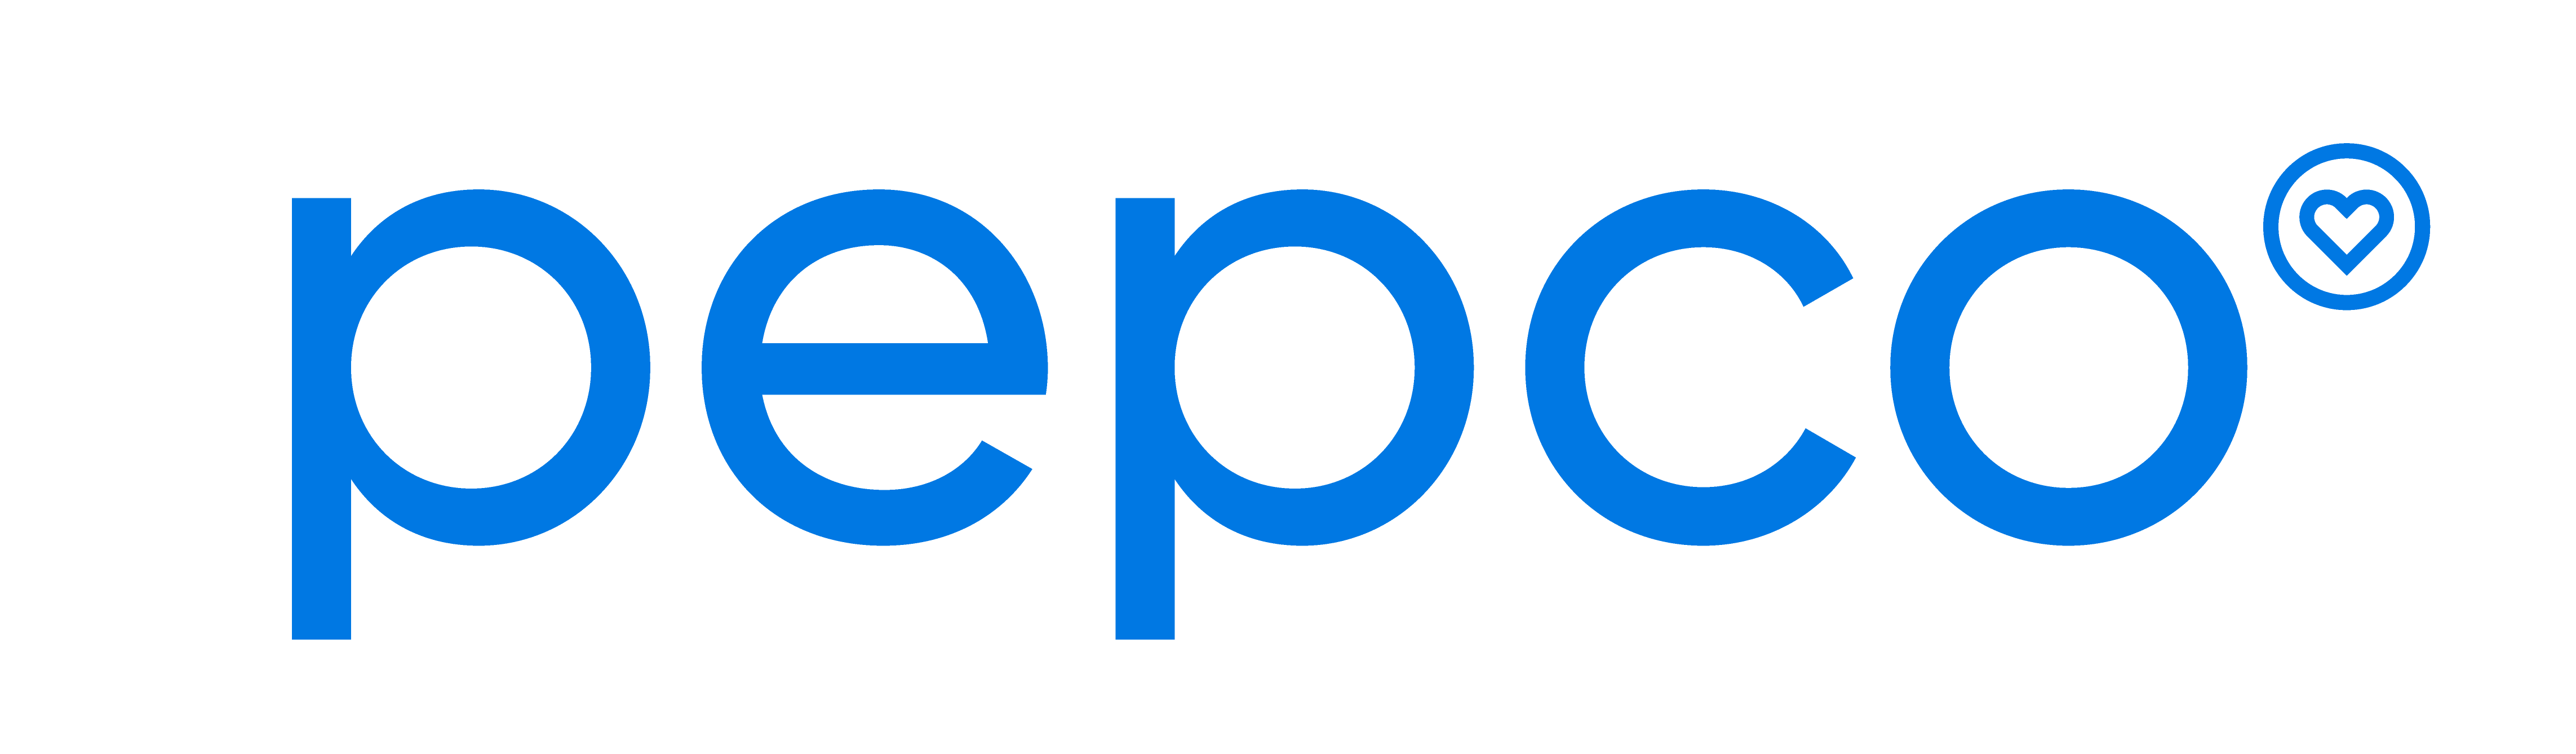 Pepco referncia cég logója